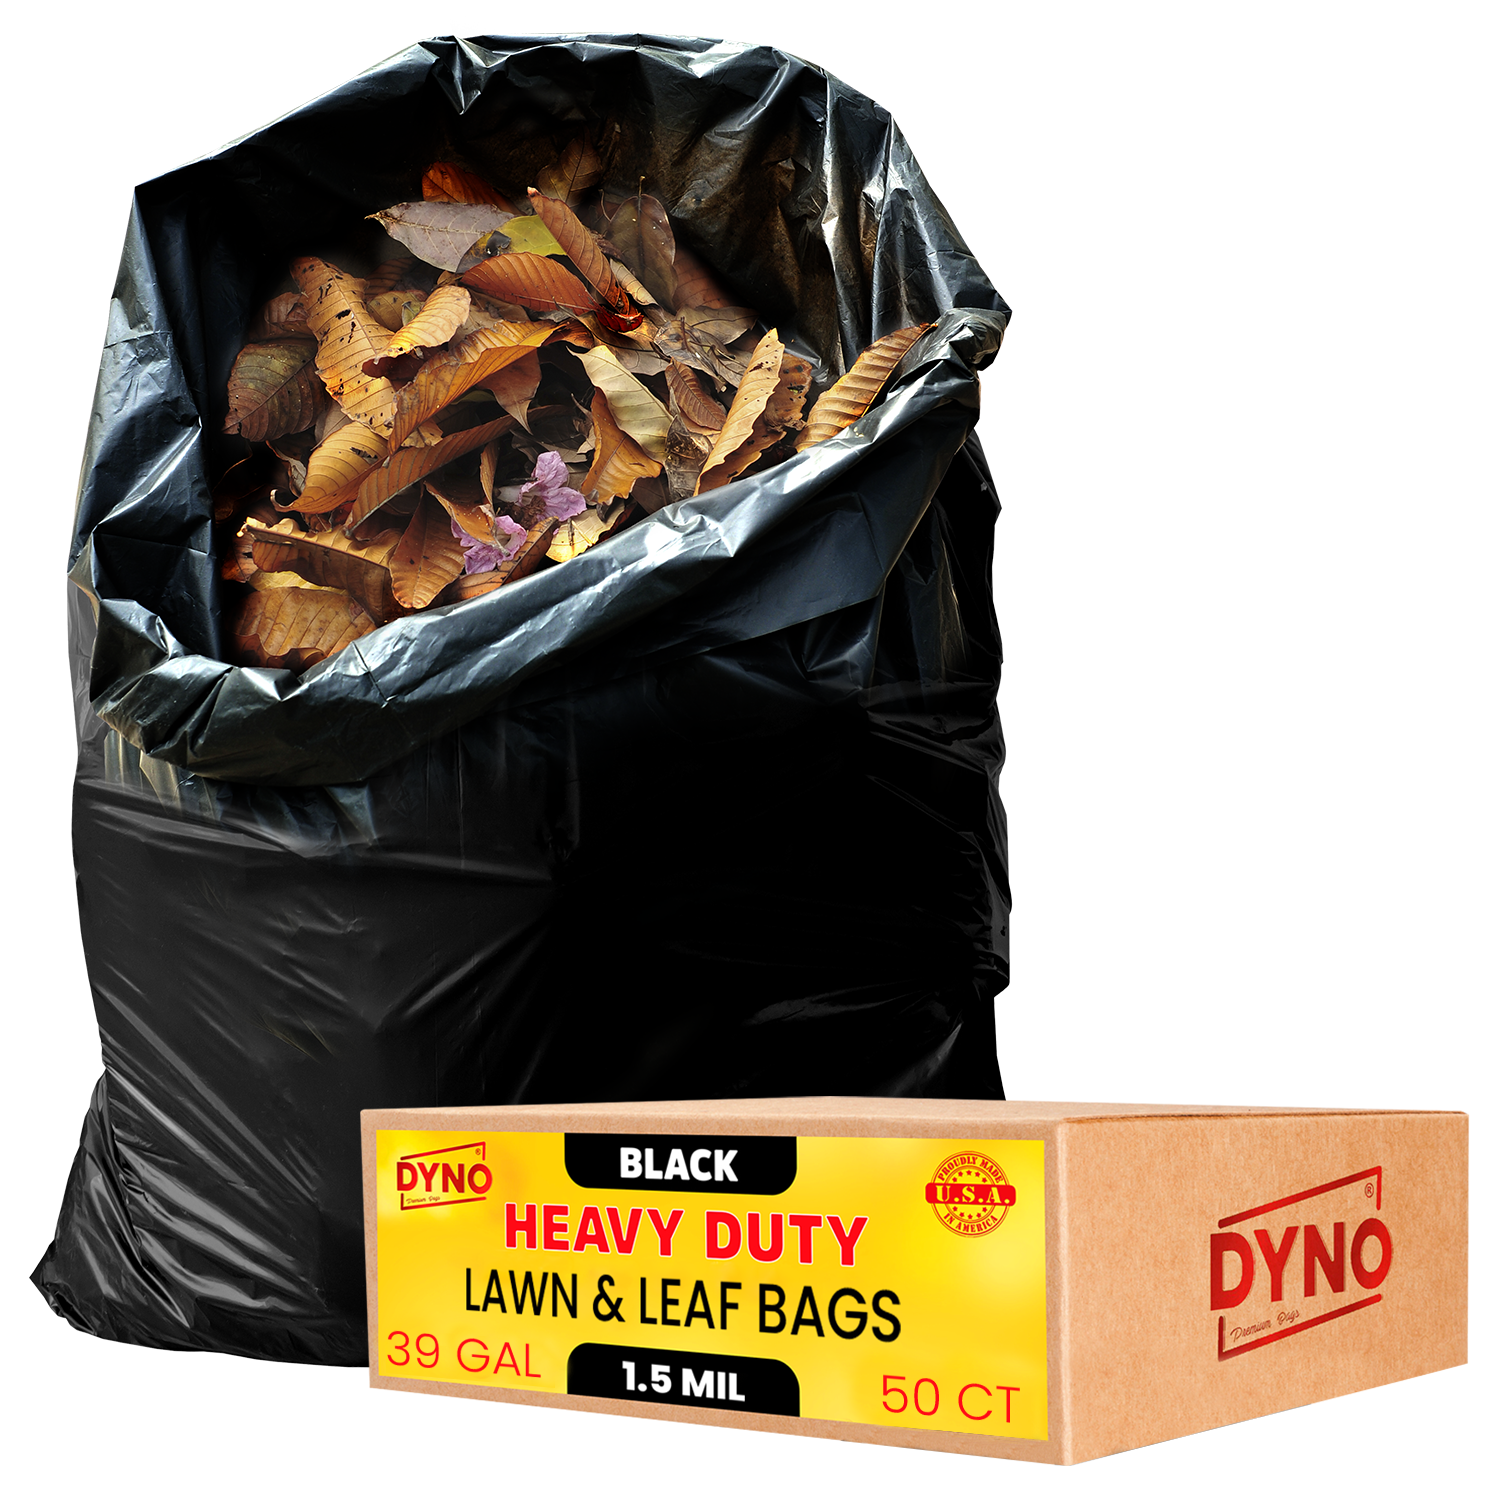 Dyno Products Online 95-Gallon, 2 Mil Thick Heavy-Duty Black Trash Bag –  DynoProd